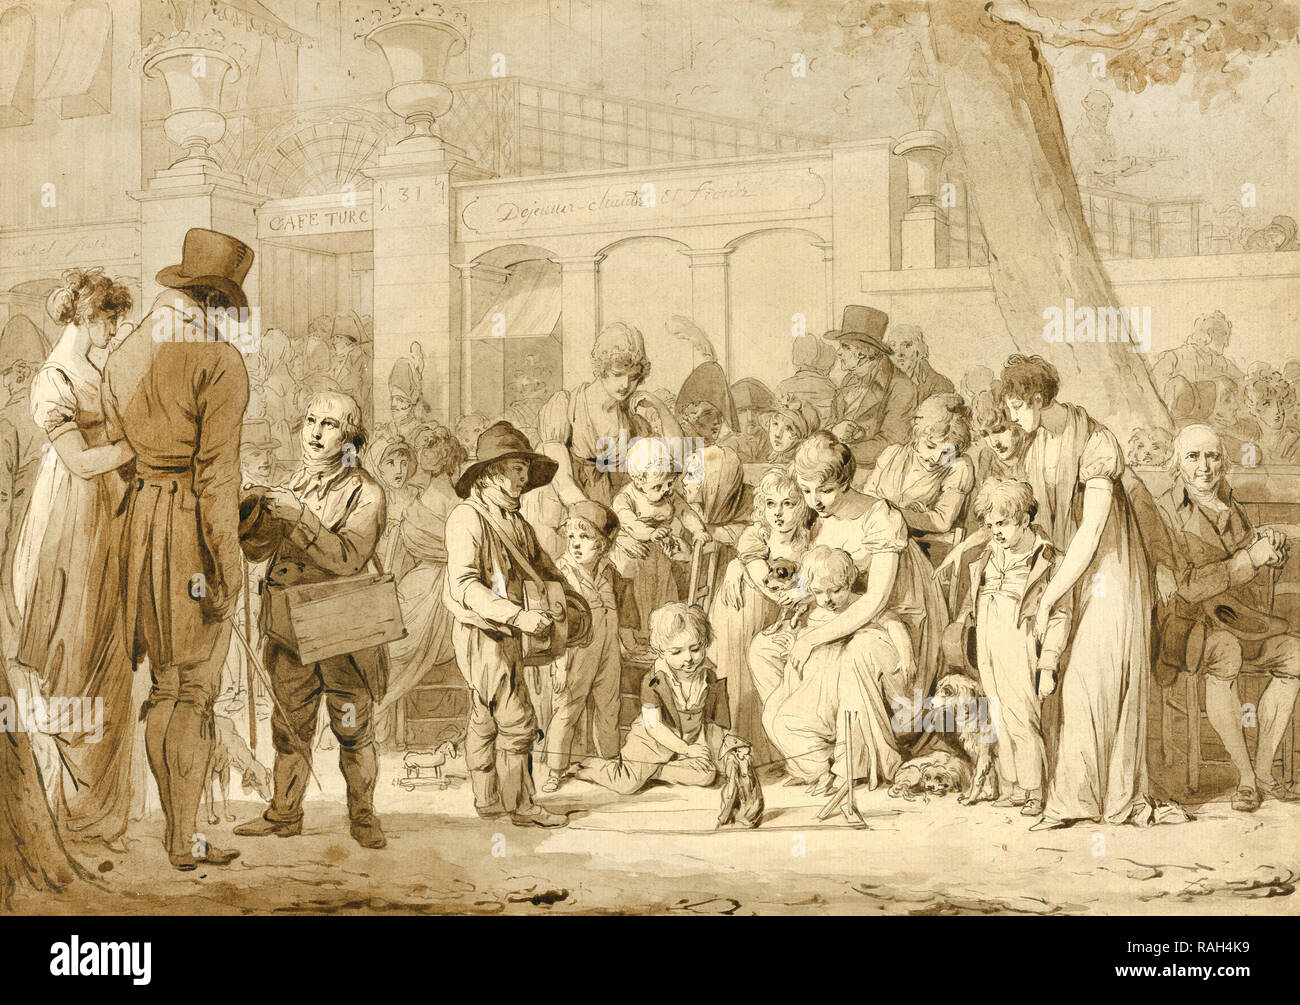 Louis Leopold Boilly, kompositorische Zeichnung für Eingang zum Jardin Turc, ca. 1810-1812, braune Tusche und graphit zeichnung, die J. Paul Getty Museum, Los Angeles, USA. Stockfoto